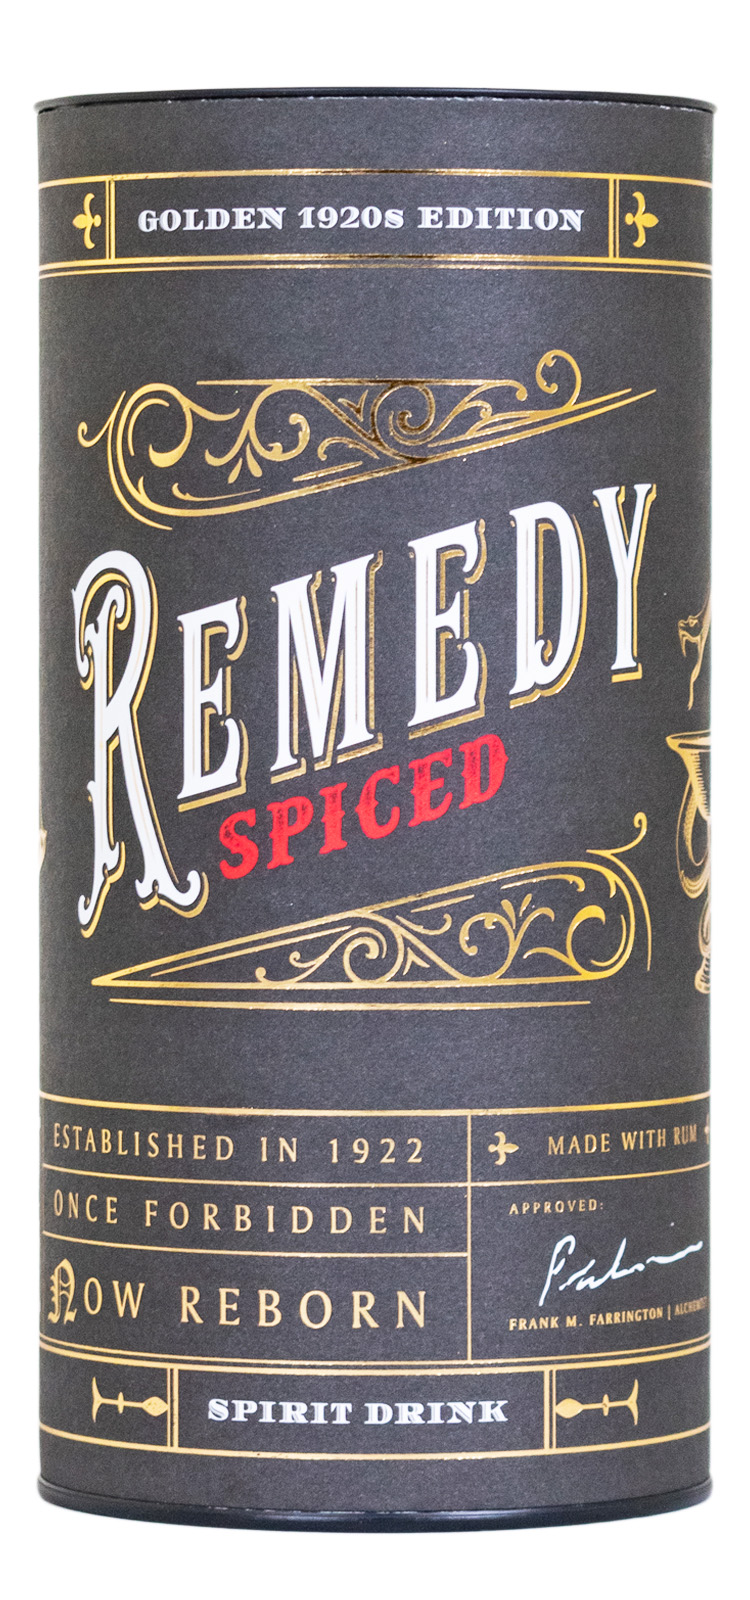 günstig Golden Spiced Rum 20s Remedy kaufen